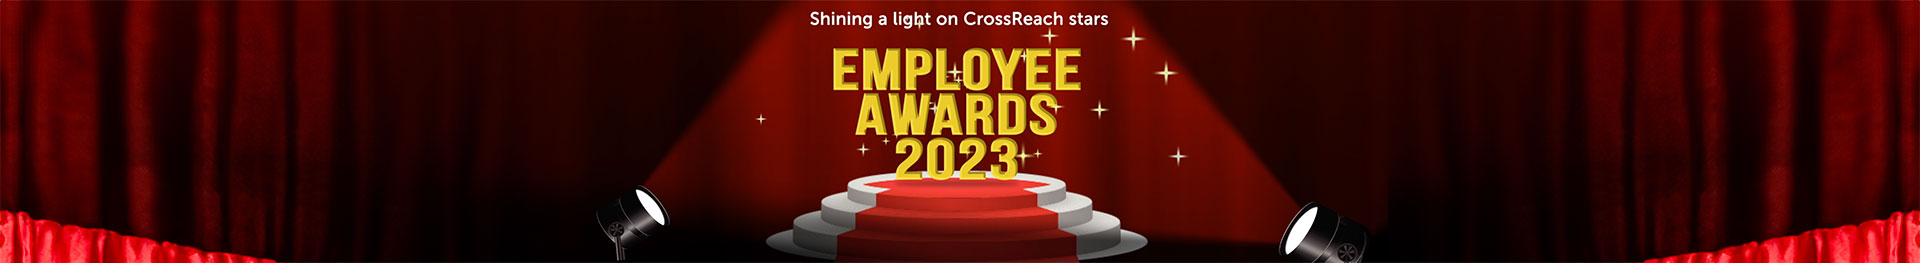 CrossReach Awards 2023 logo